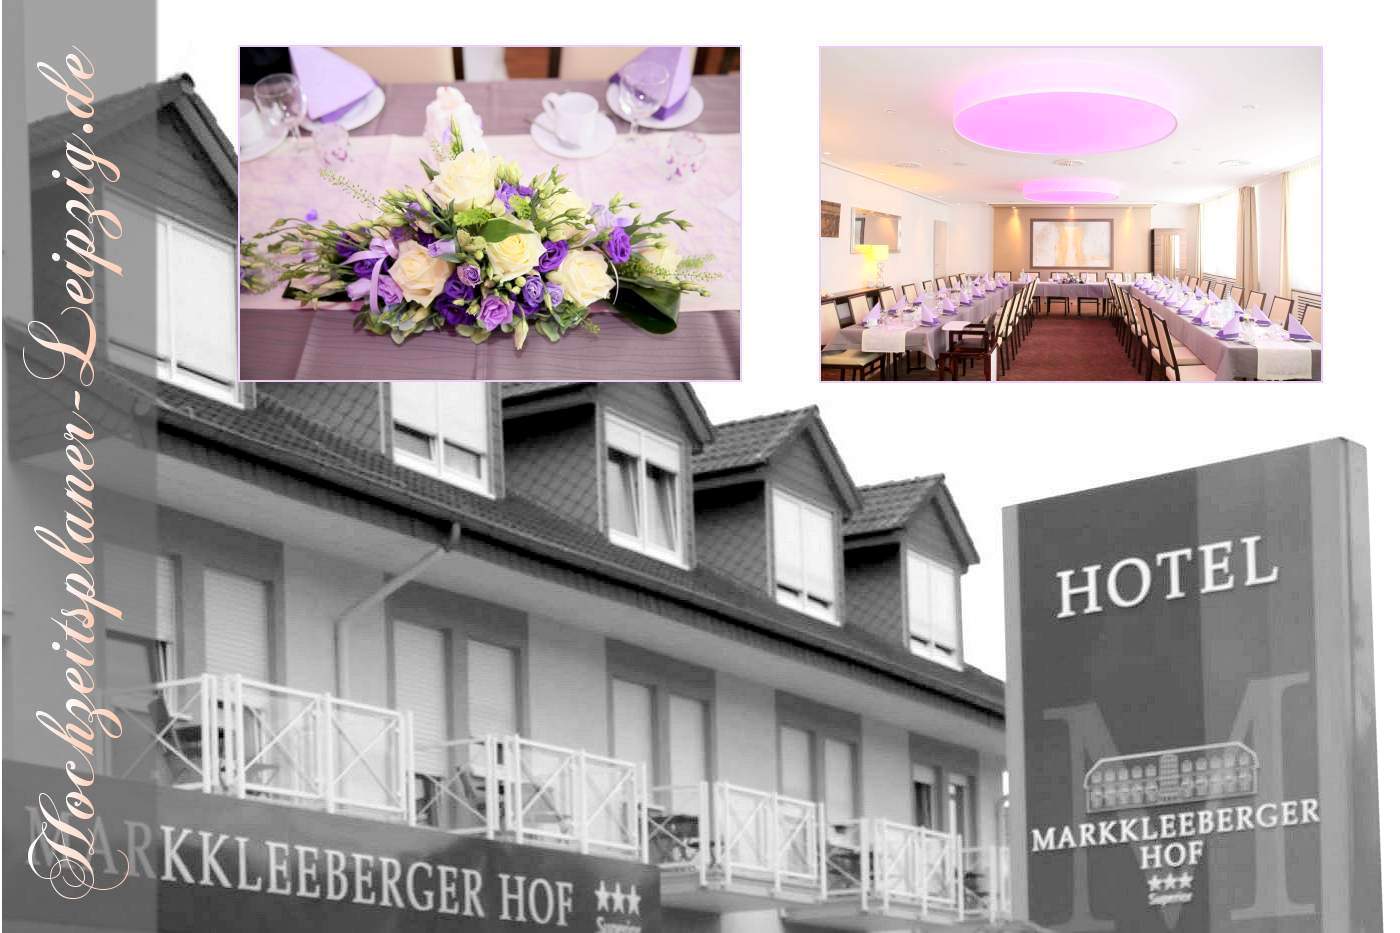 Hochzeitslocation Markkleeberger Hof (Restaurant + Hotel für Hochzeitsfeier)